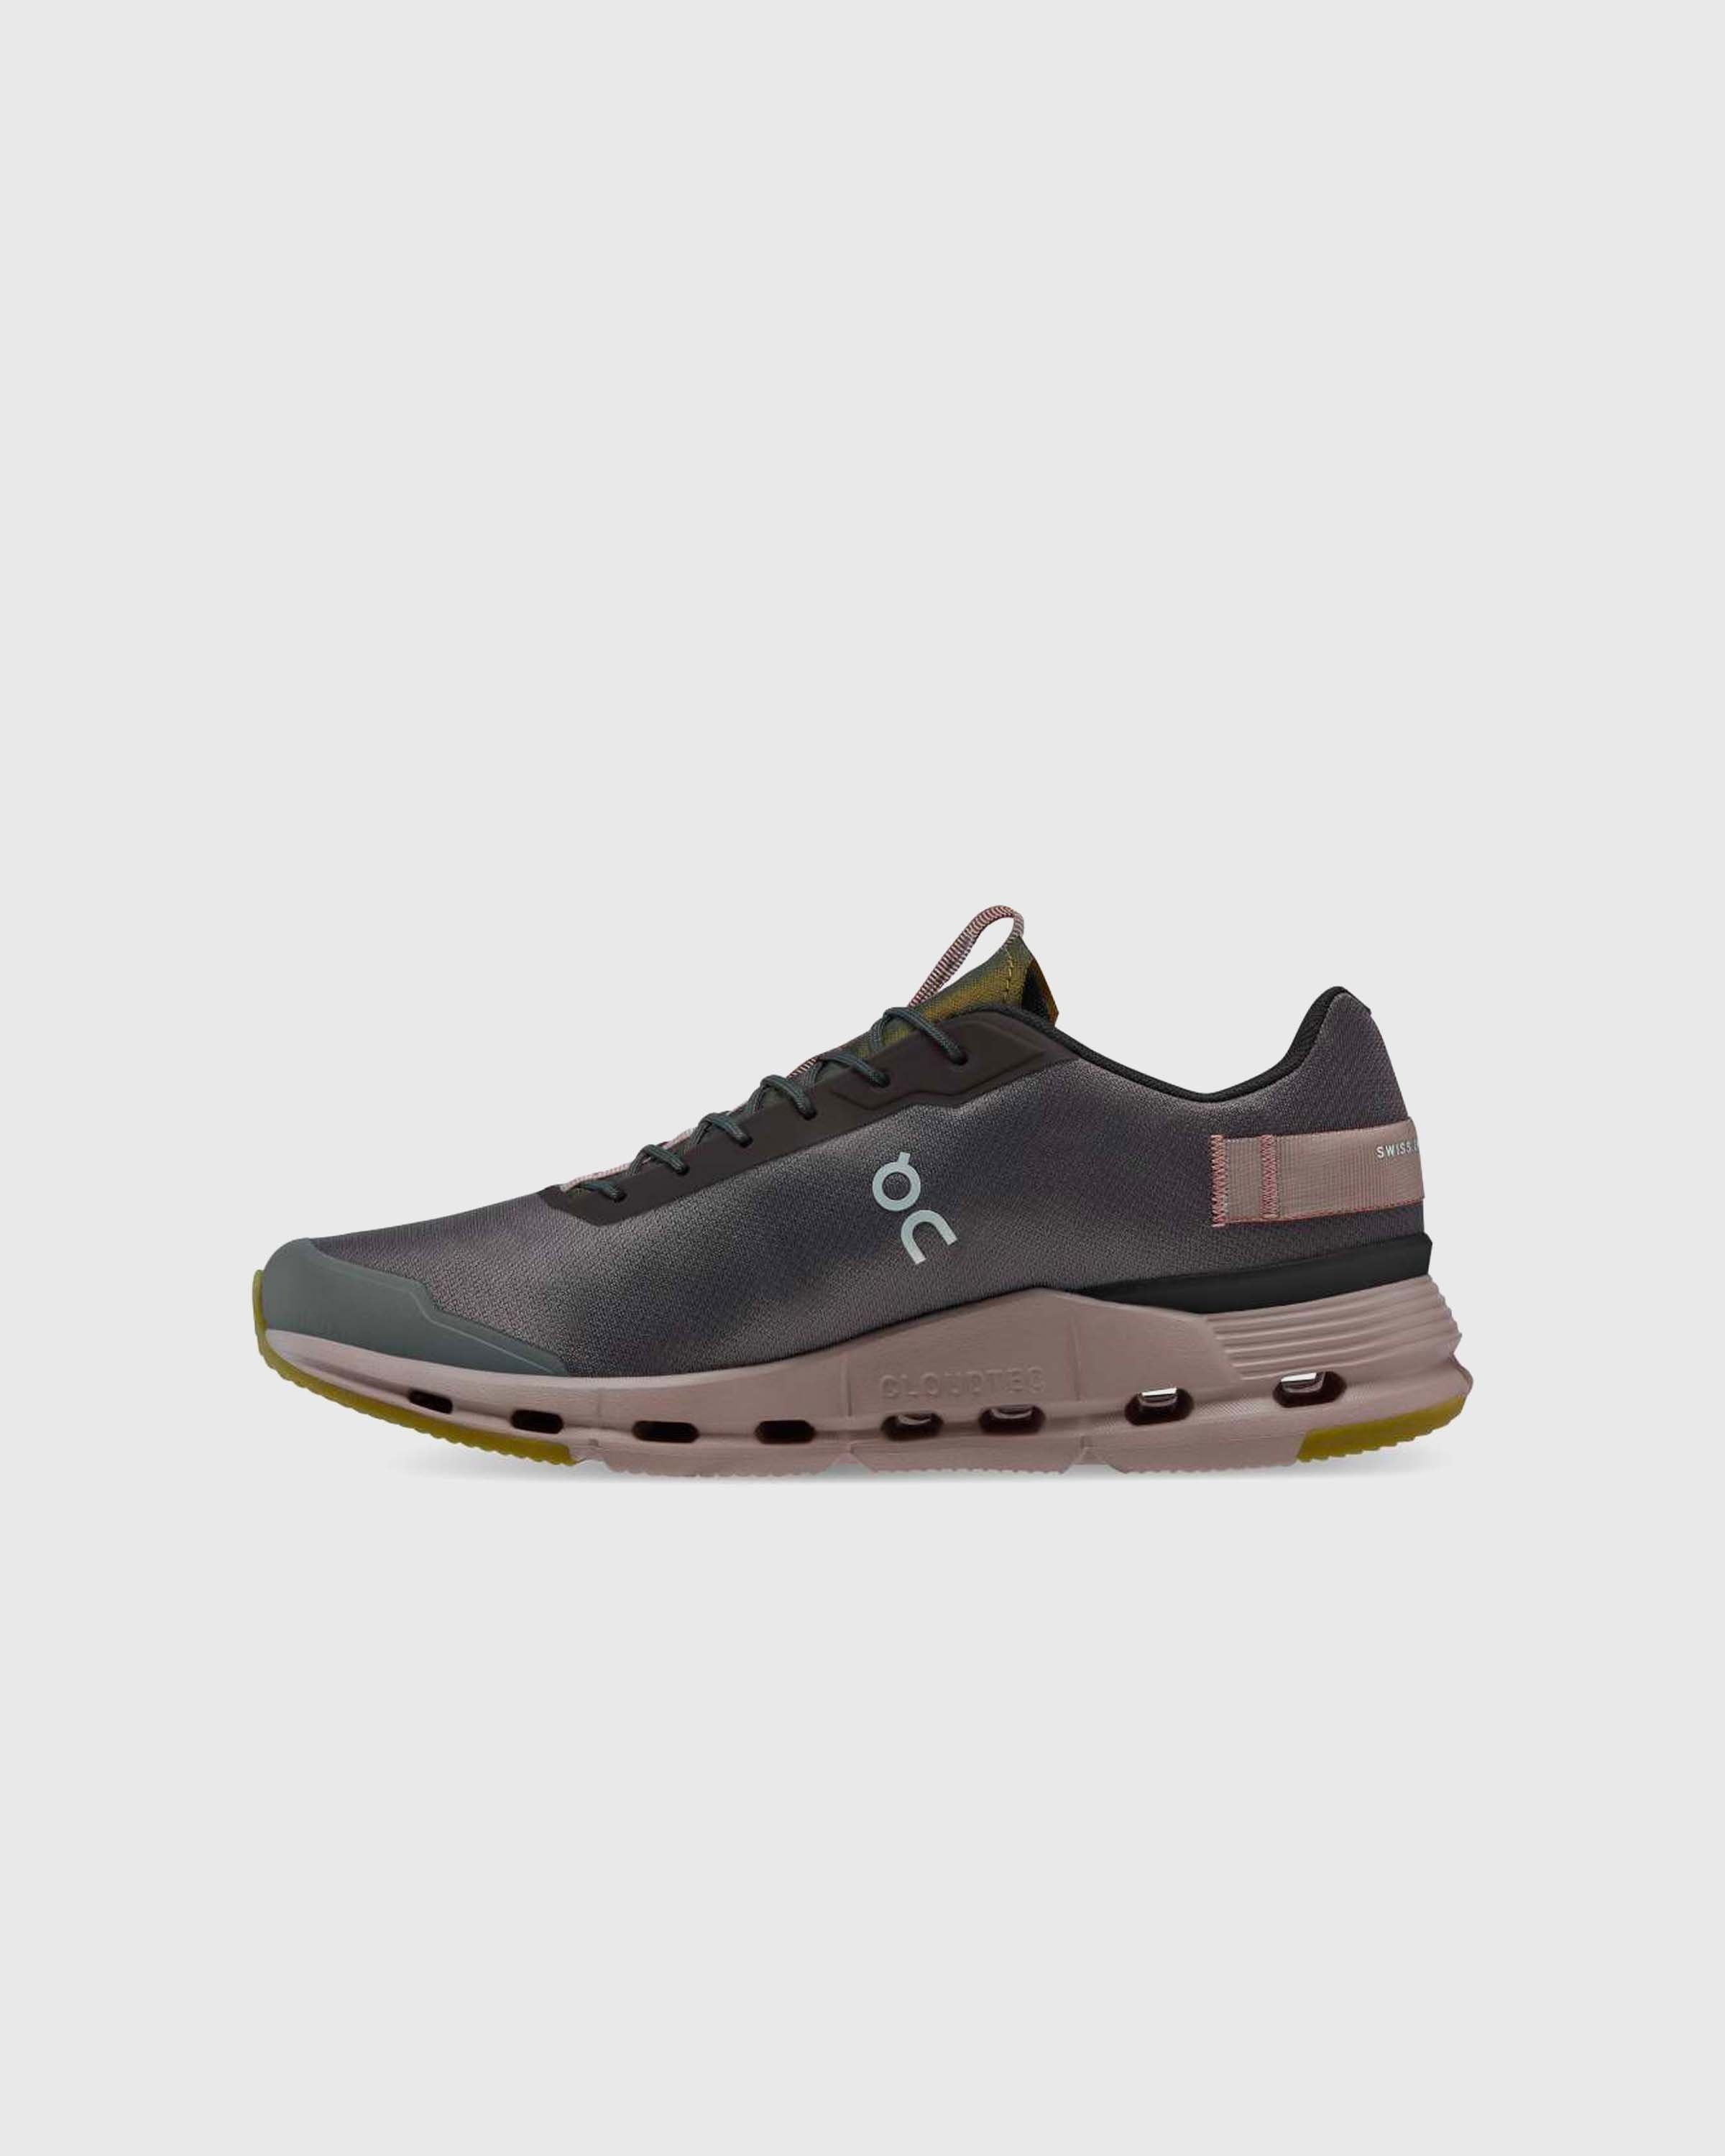 On – Cloudnova Form Titanite Pebble/Quartz - Sneakers - Multi - Image 2